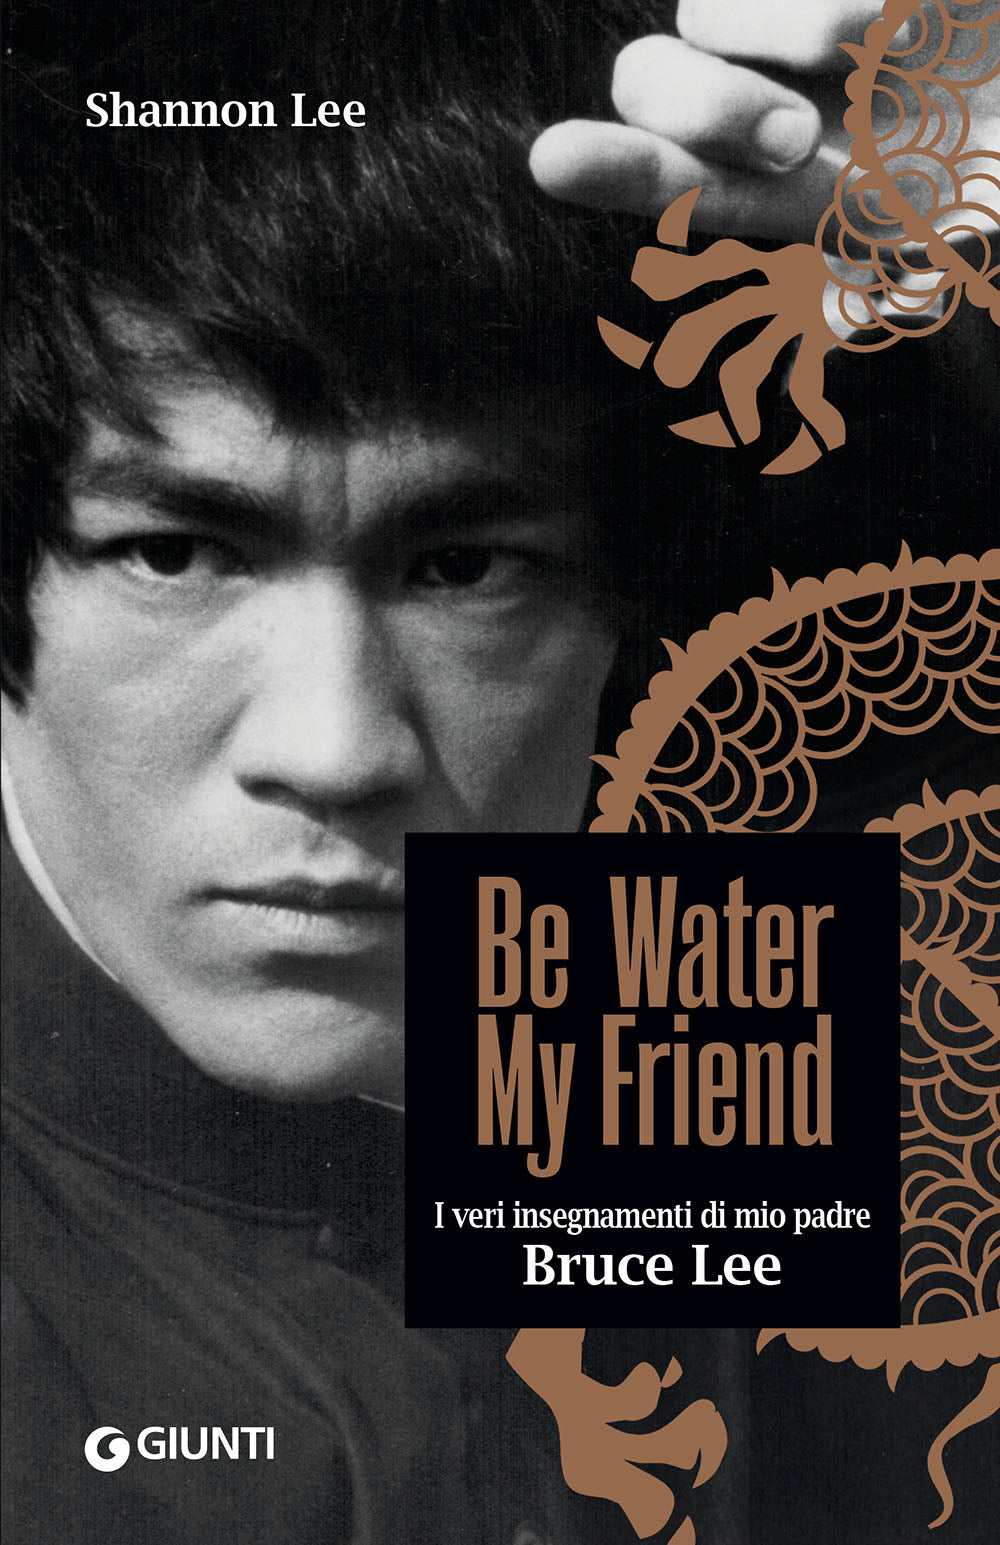 Be Water, My Friend::I veri insegnamenti di mio padre Bruce Lee